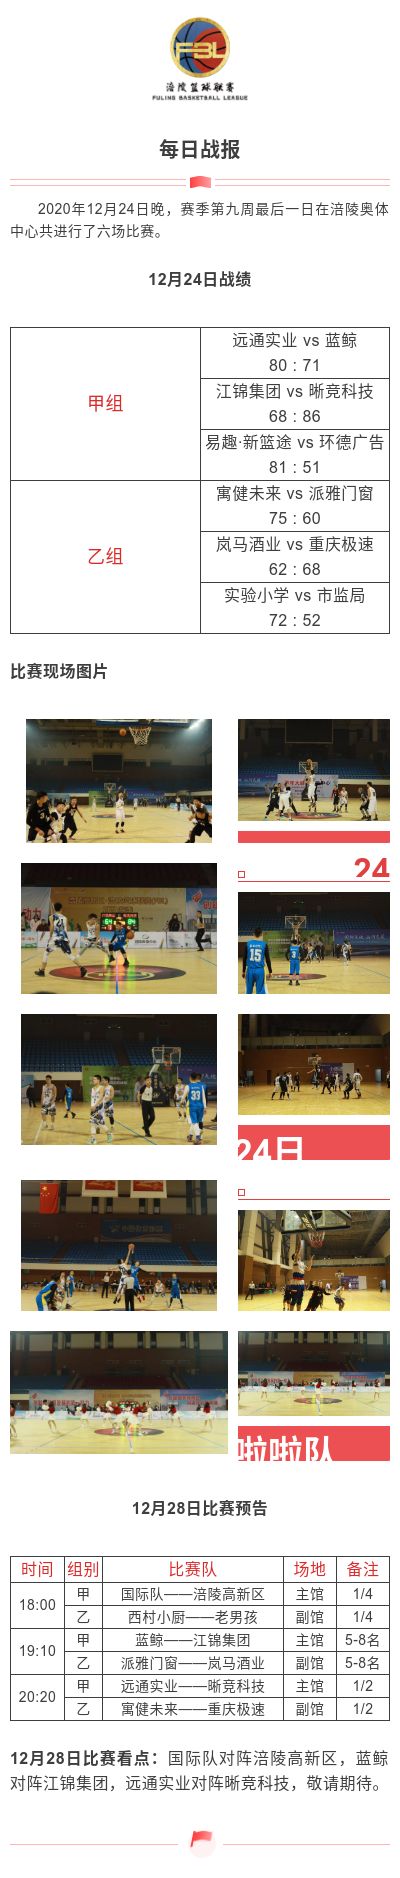 涪陵高新区·涪陵篮球联赛（FBL）2020赛季每日战报12.24